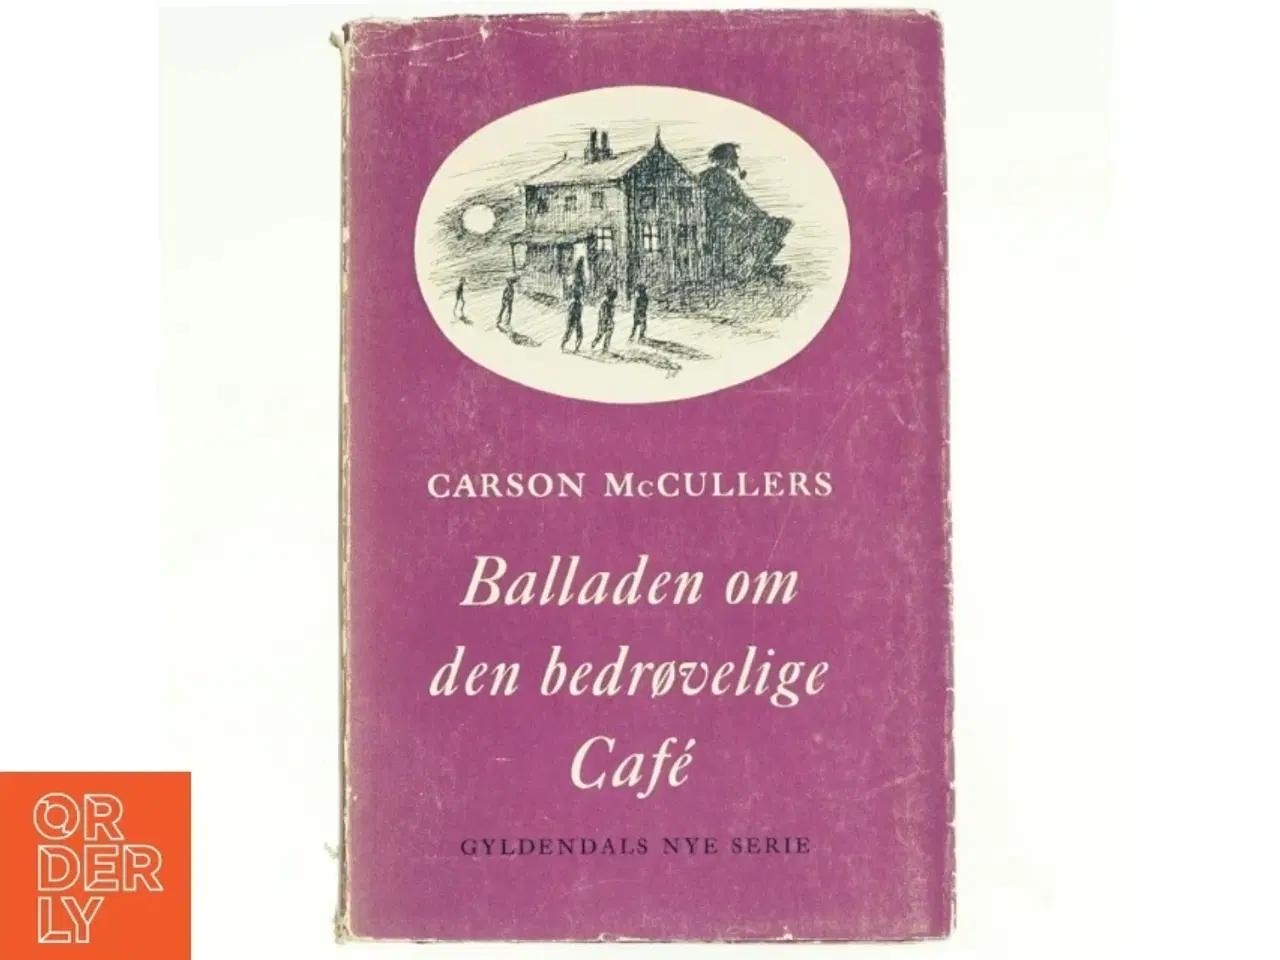 Billede 1 - Balladen om den bedrøvelige cafe af Carson McCullers (bog)